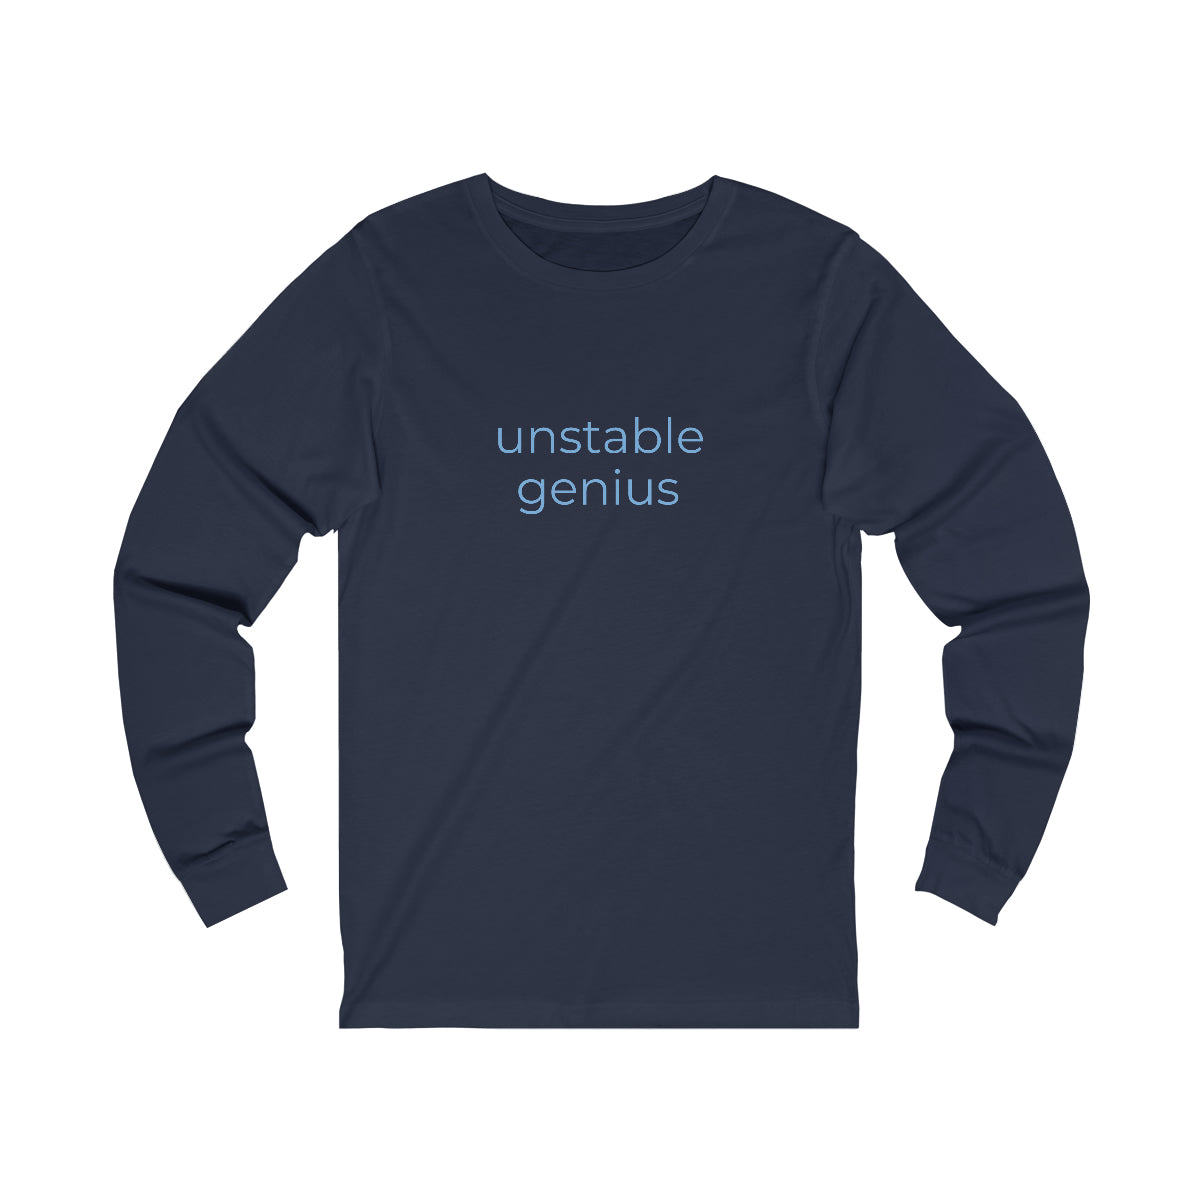 Unisex Jersey Long Sleeve Tee -  unstable genius